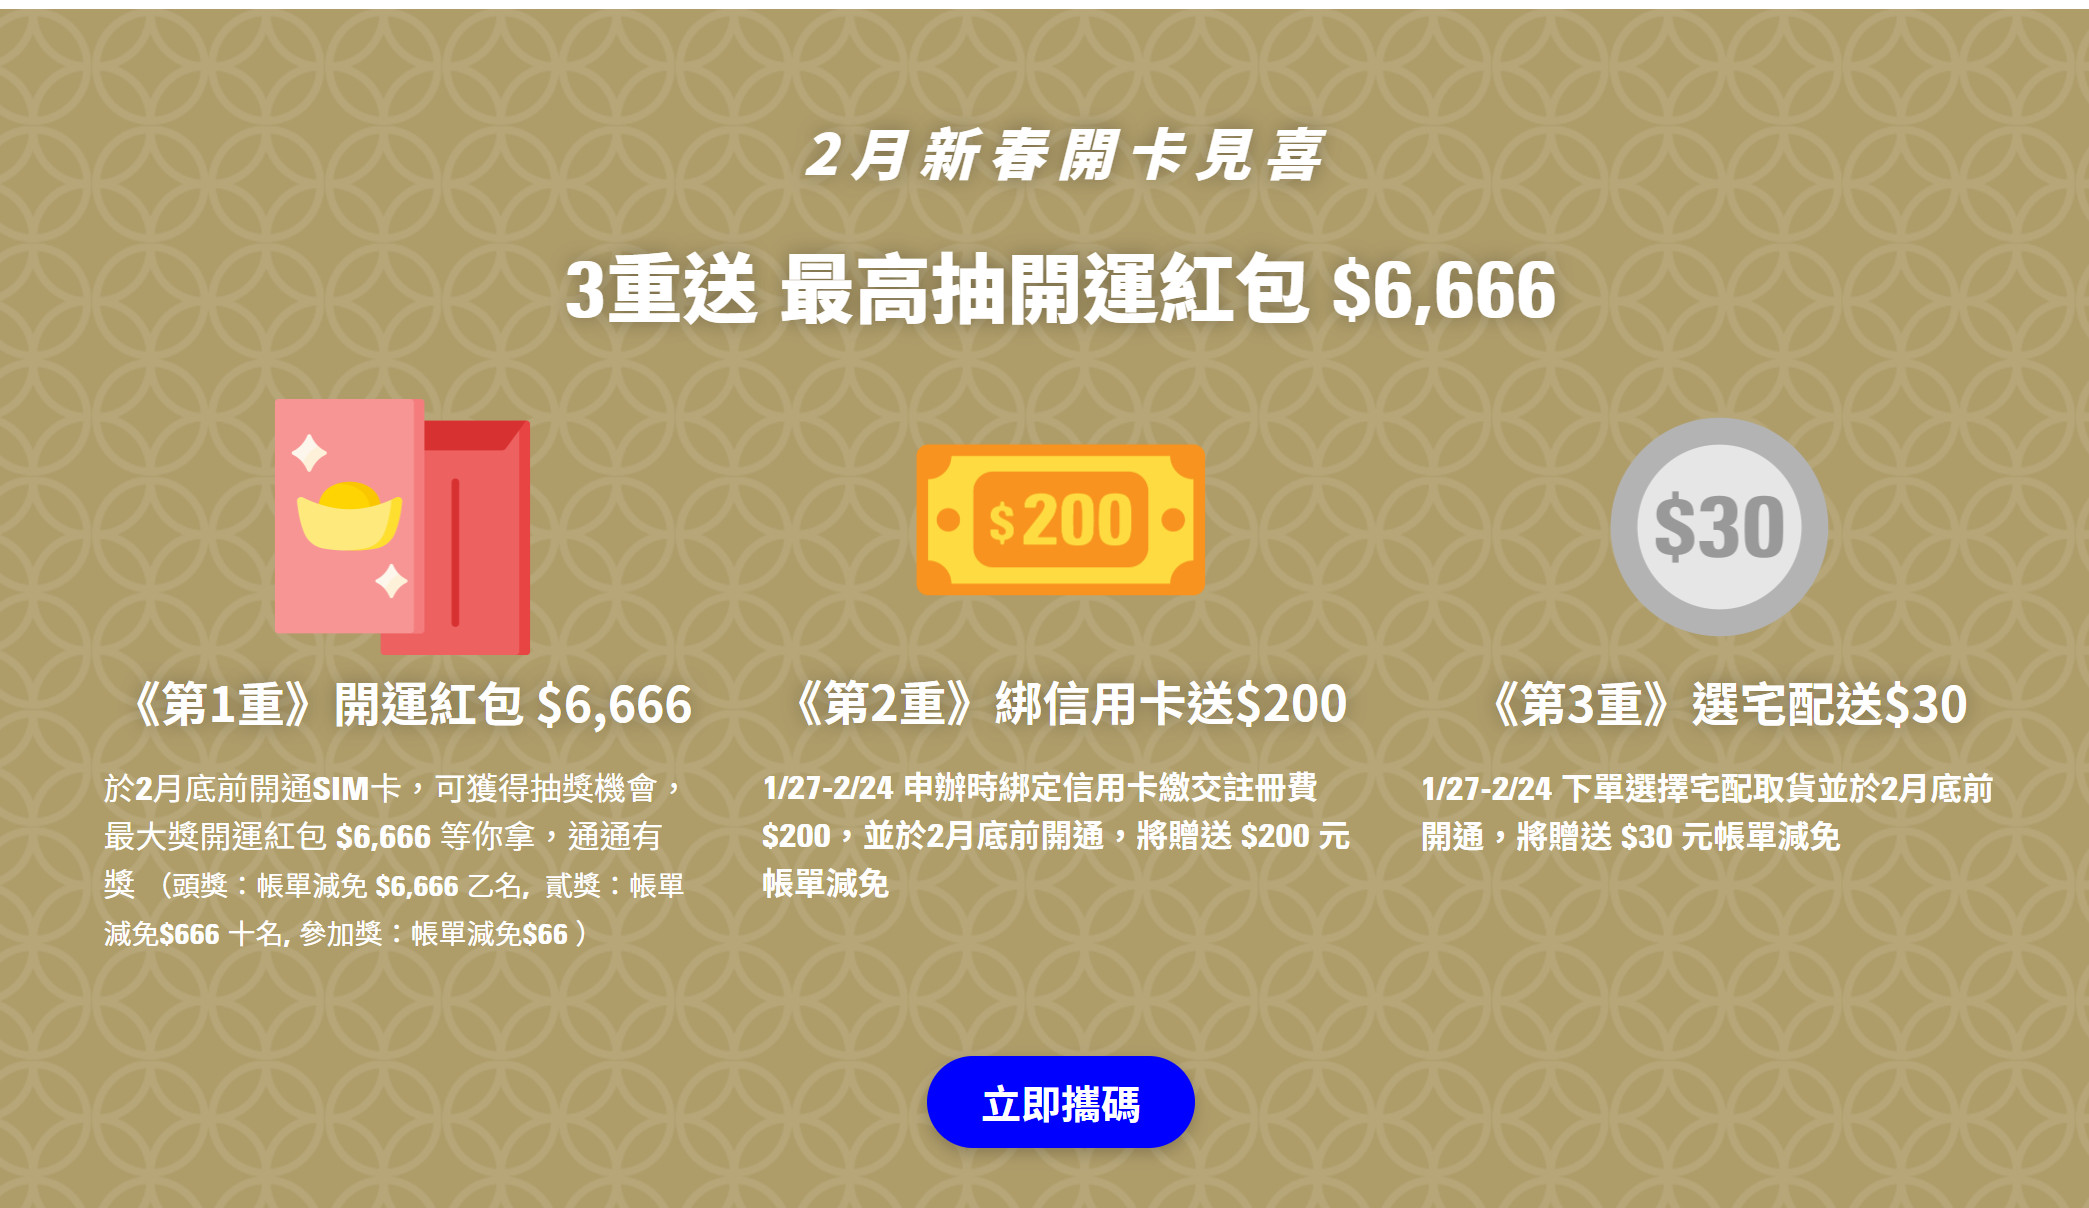 【無框行動】新春專案，中華電信大4G網路吃到飽466元，低流量只要166元!超適合搭配台灣之星雙11專案。 - 無框行動優惠 - 敗家達人推薦